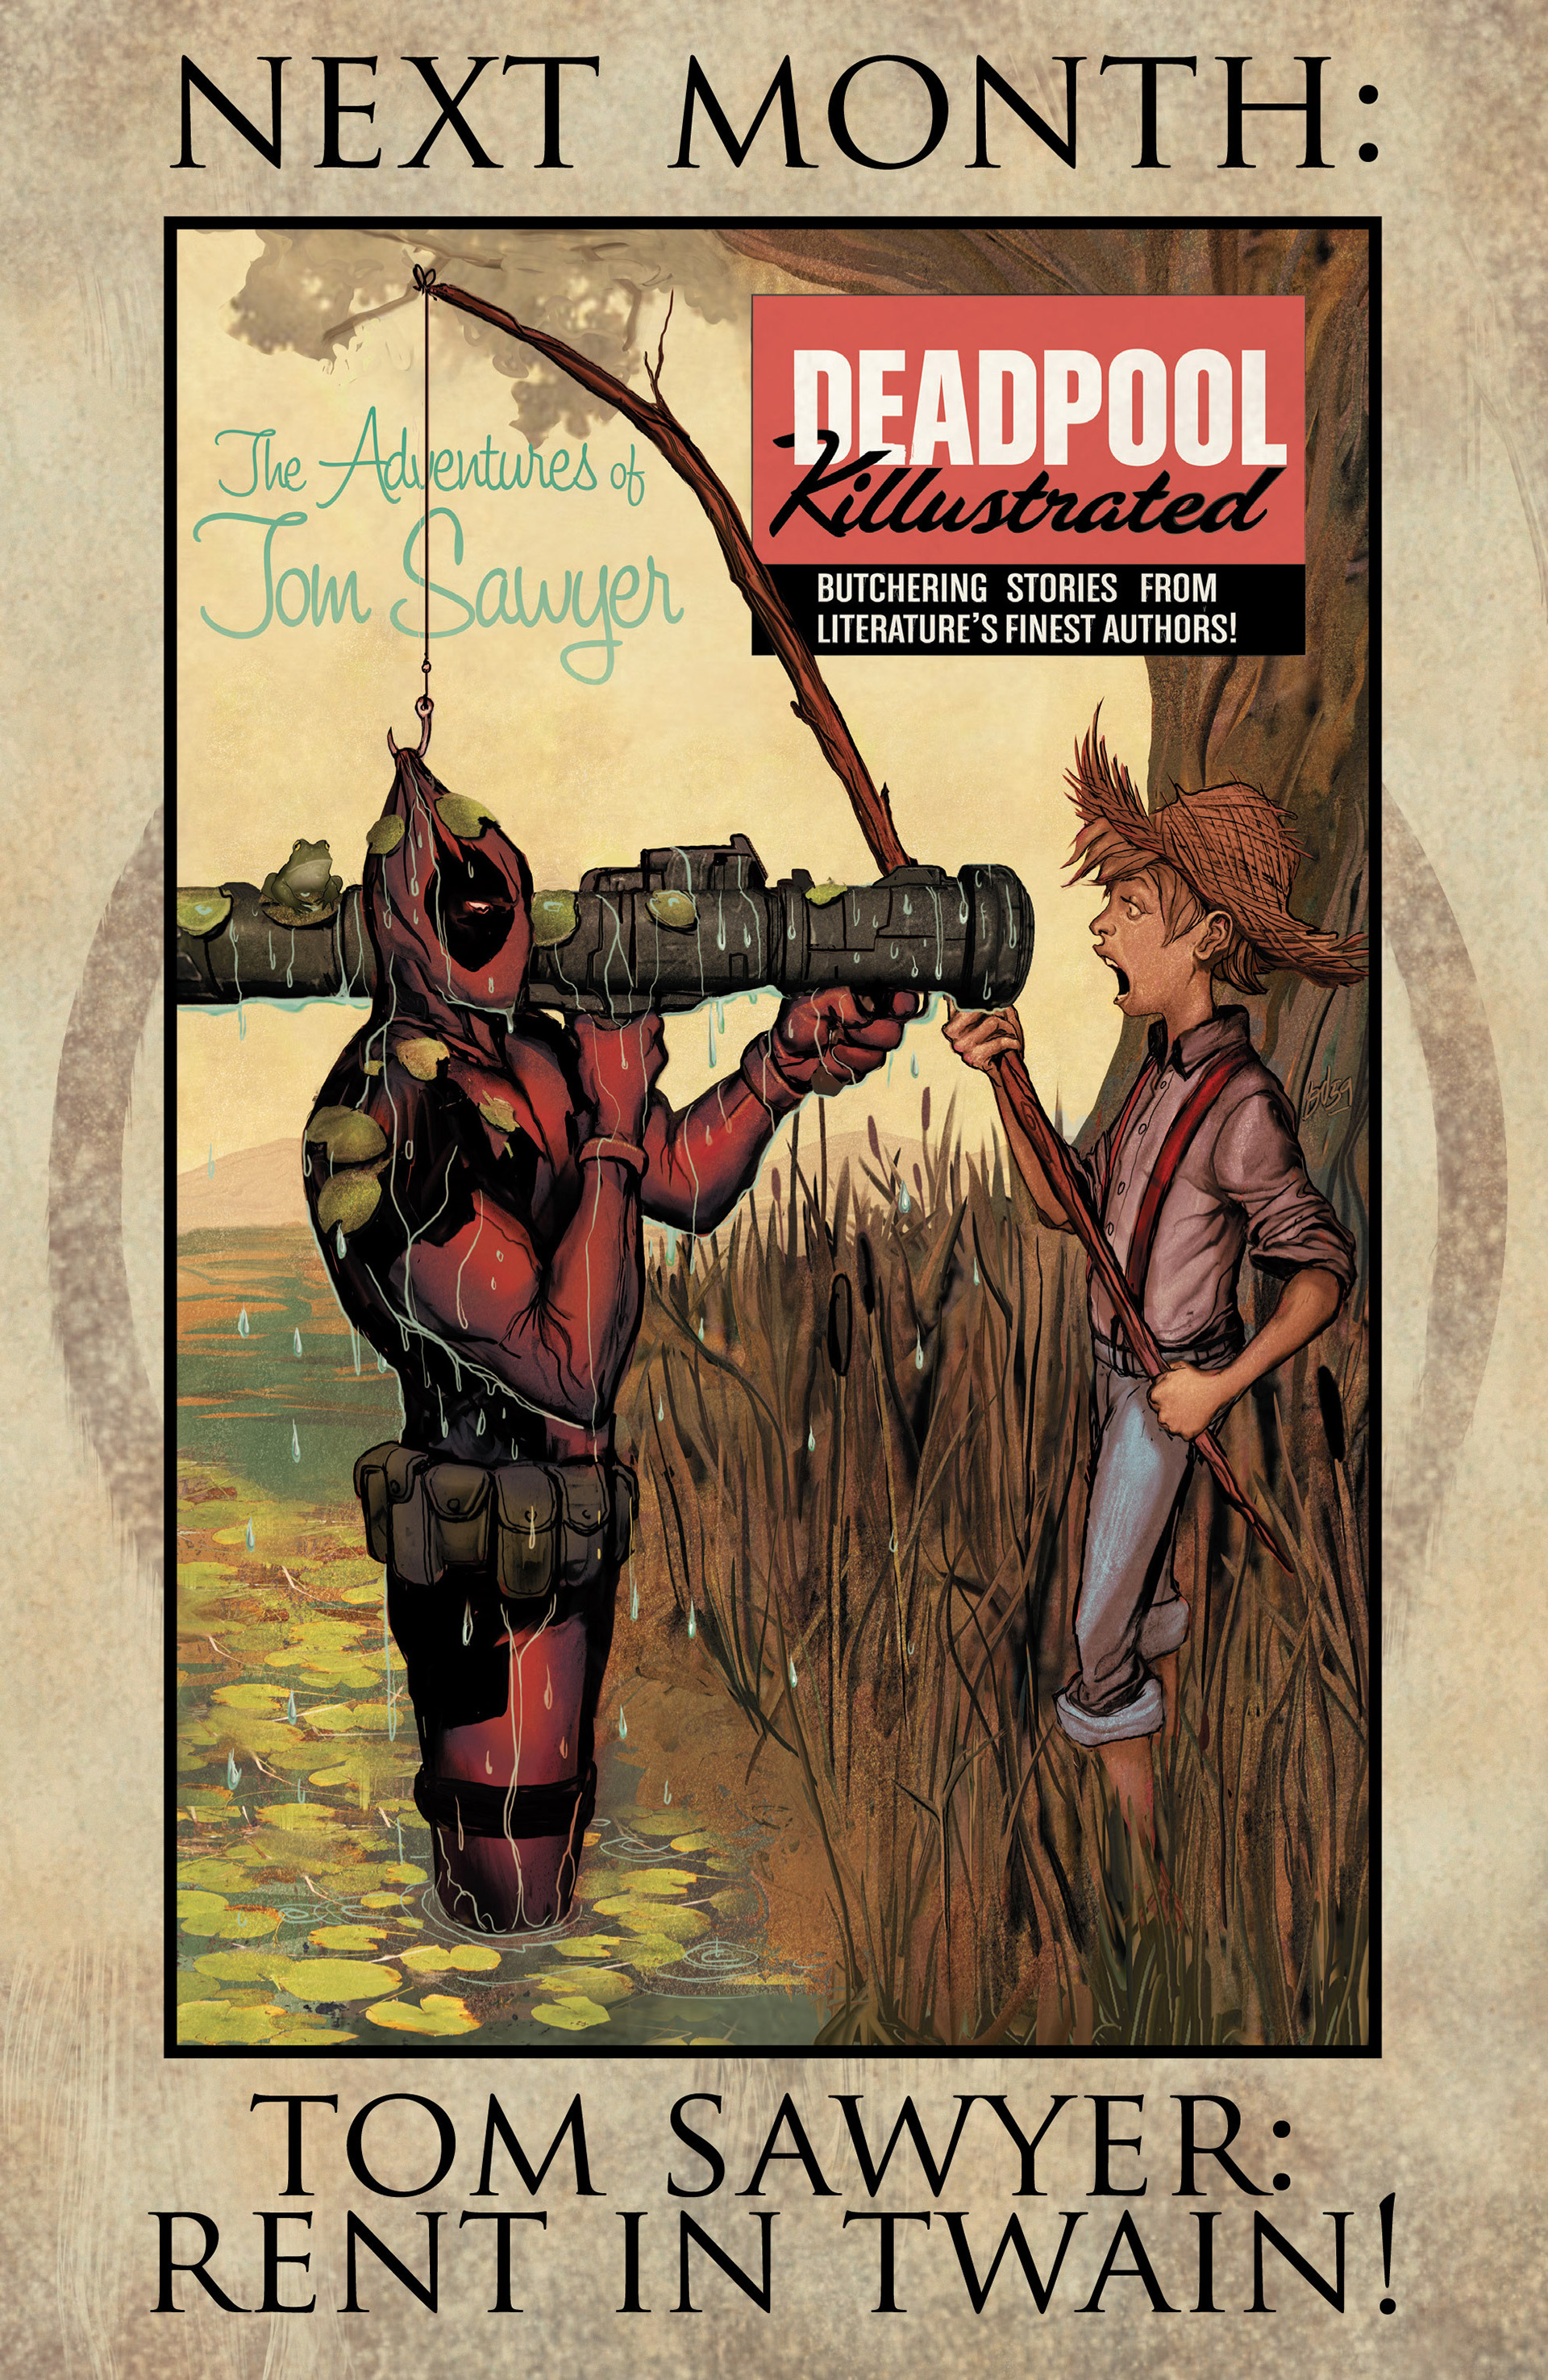 Read online Deadpool Killustrated comic -  Issue #1 - 22